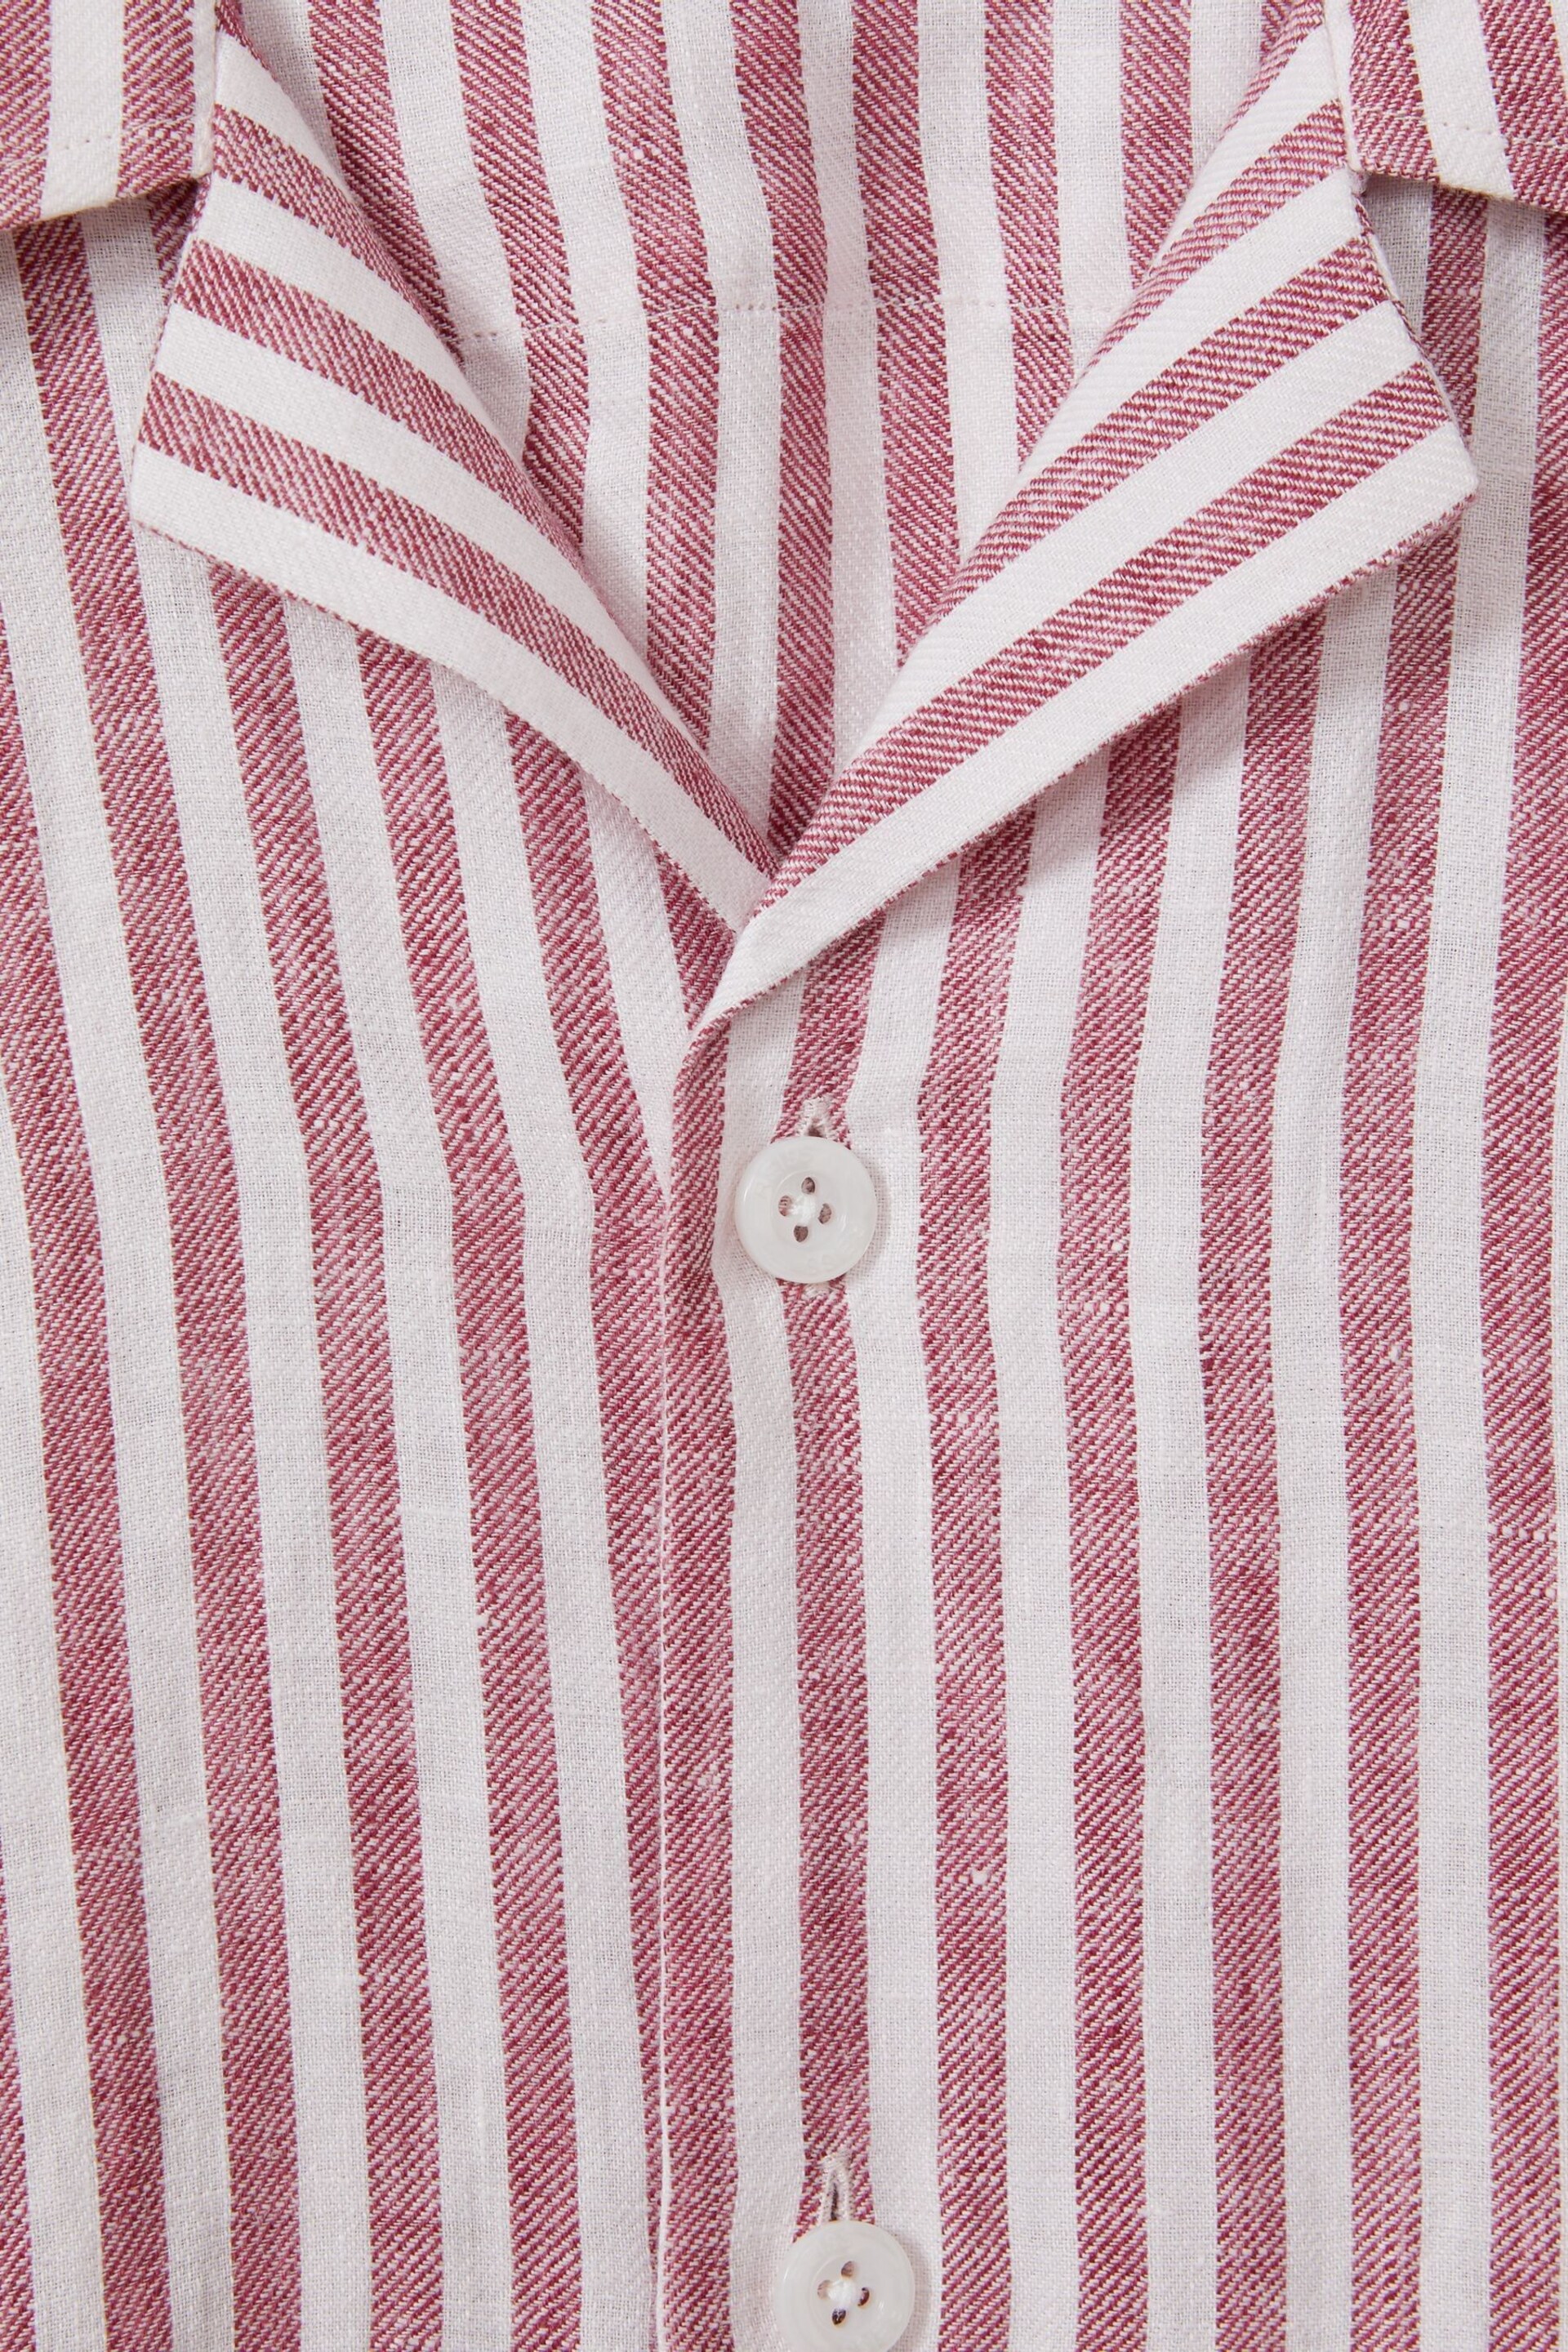 Reiss Pink Stripe Beldi Relaxed Linen Cuban Collar Shirt - Image 7 of 7